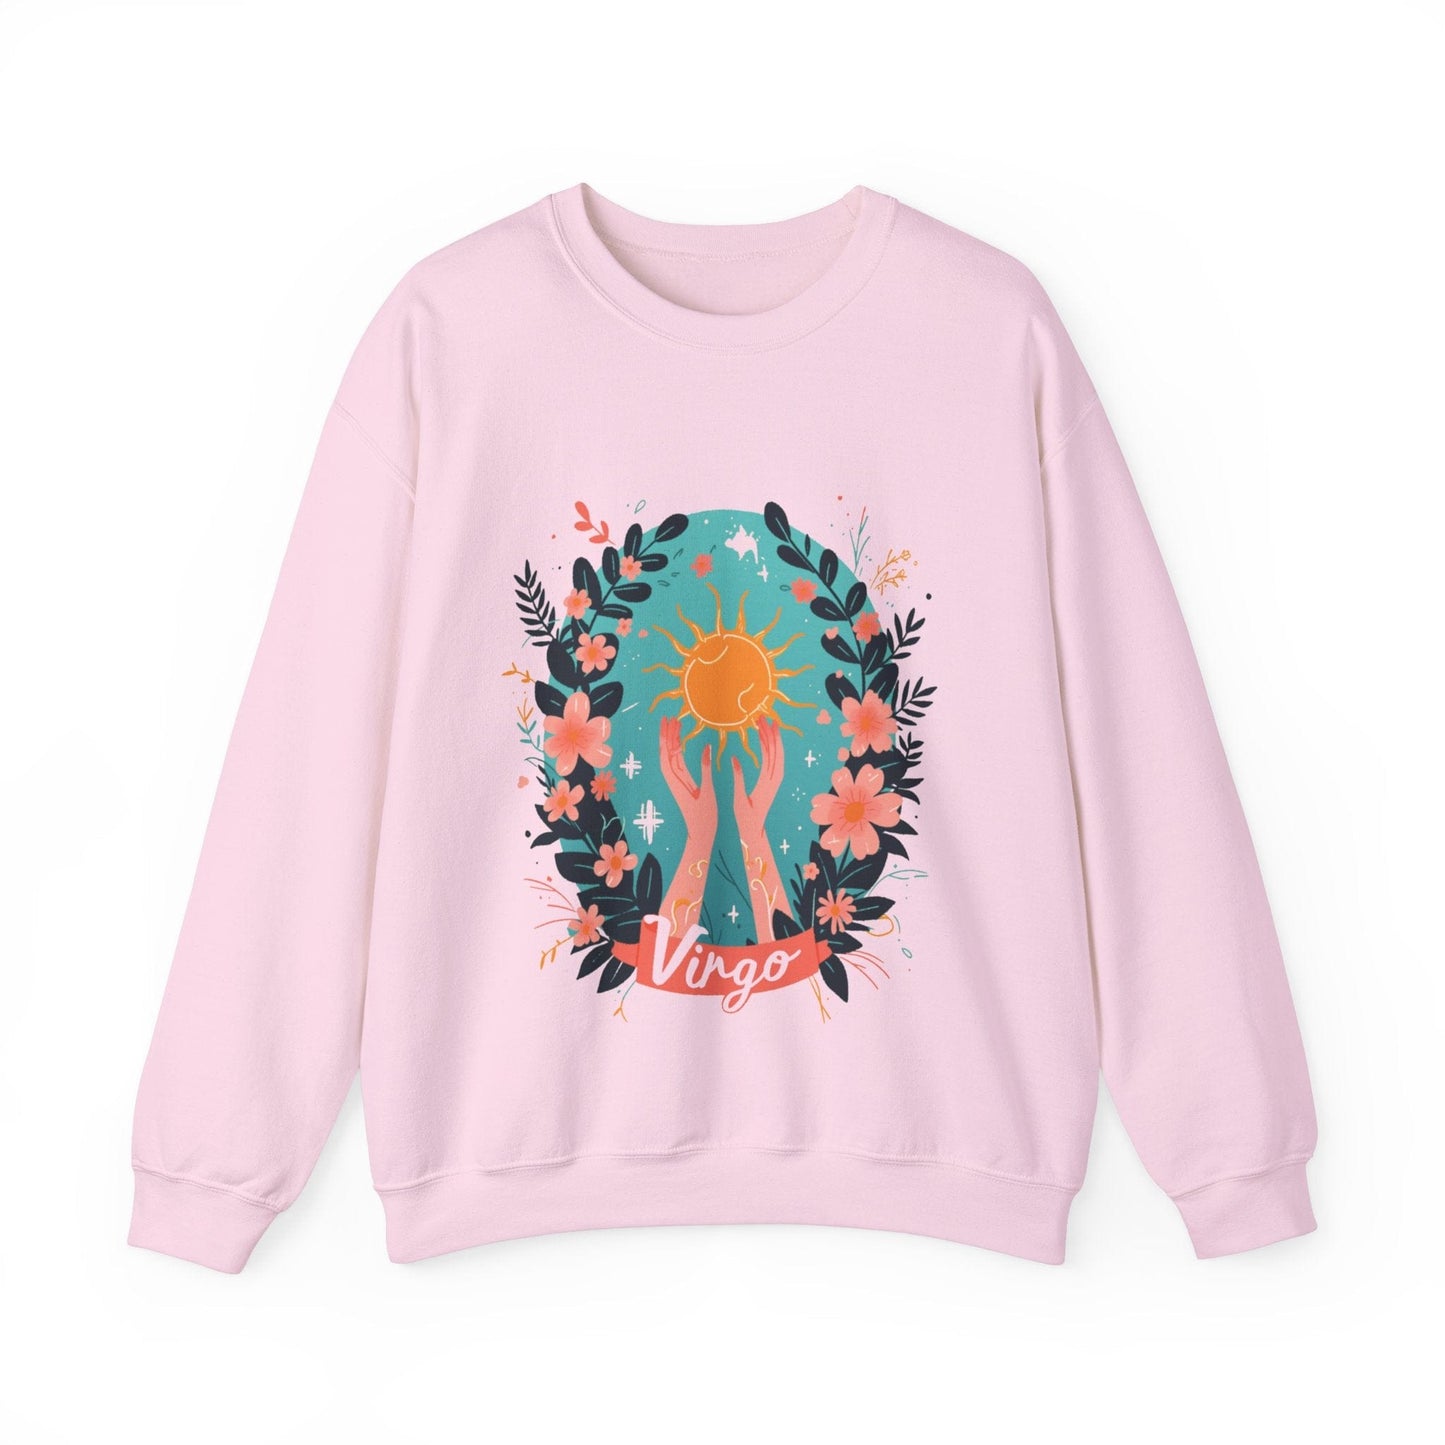 Sweatshirt S / Light Pink Virgo Vitality Sweater: Nurturing Warmth